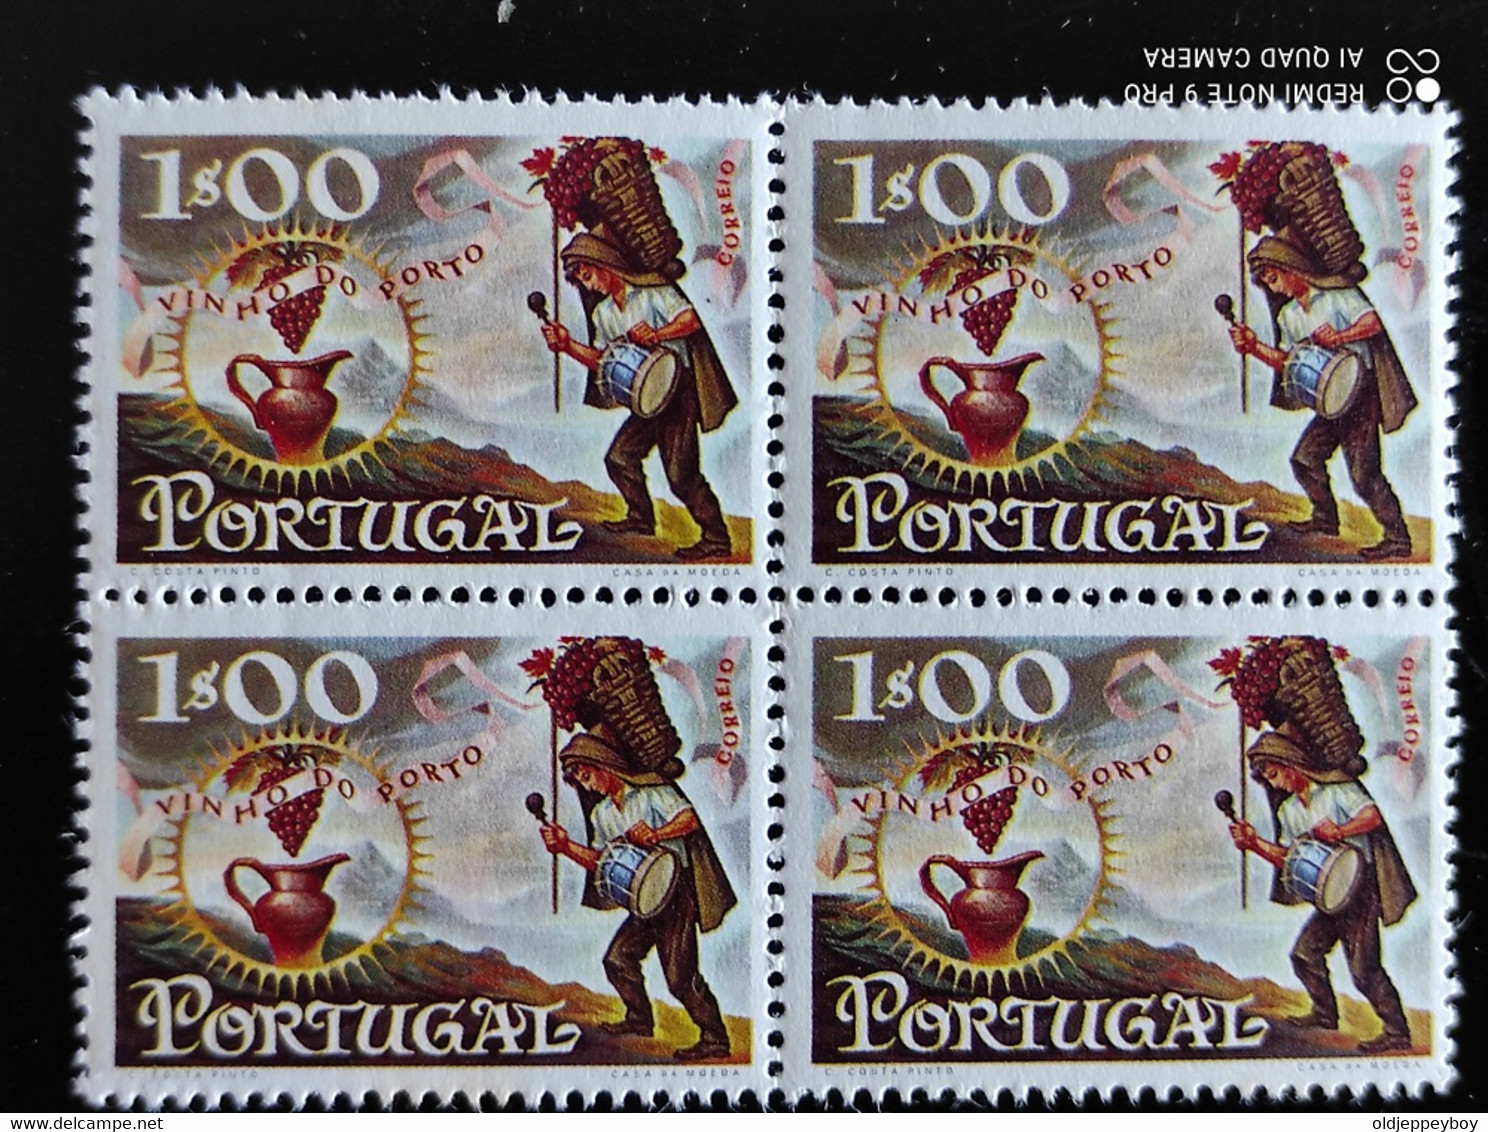 ERRO VARIEDADE  Portugal, 1970 - Vinho Do Porto  Mundifil 1088 2 Blocks Of 4 Colour Variation Error Cor Errada MNH Rare - Ongebruikt